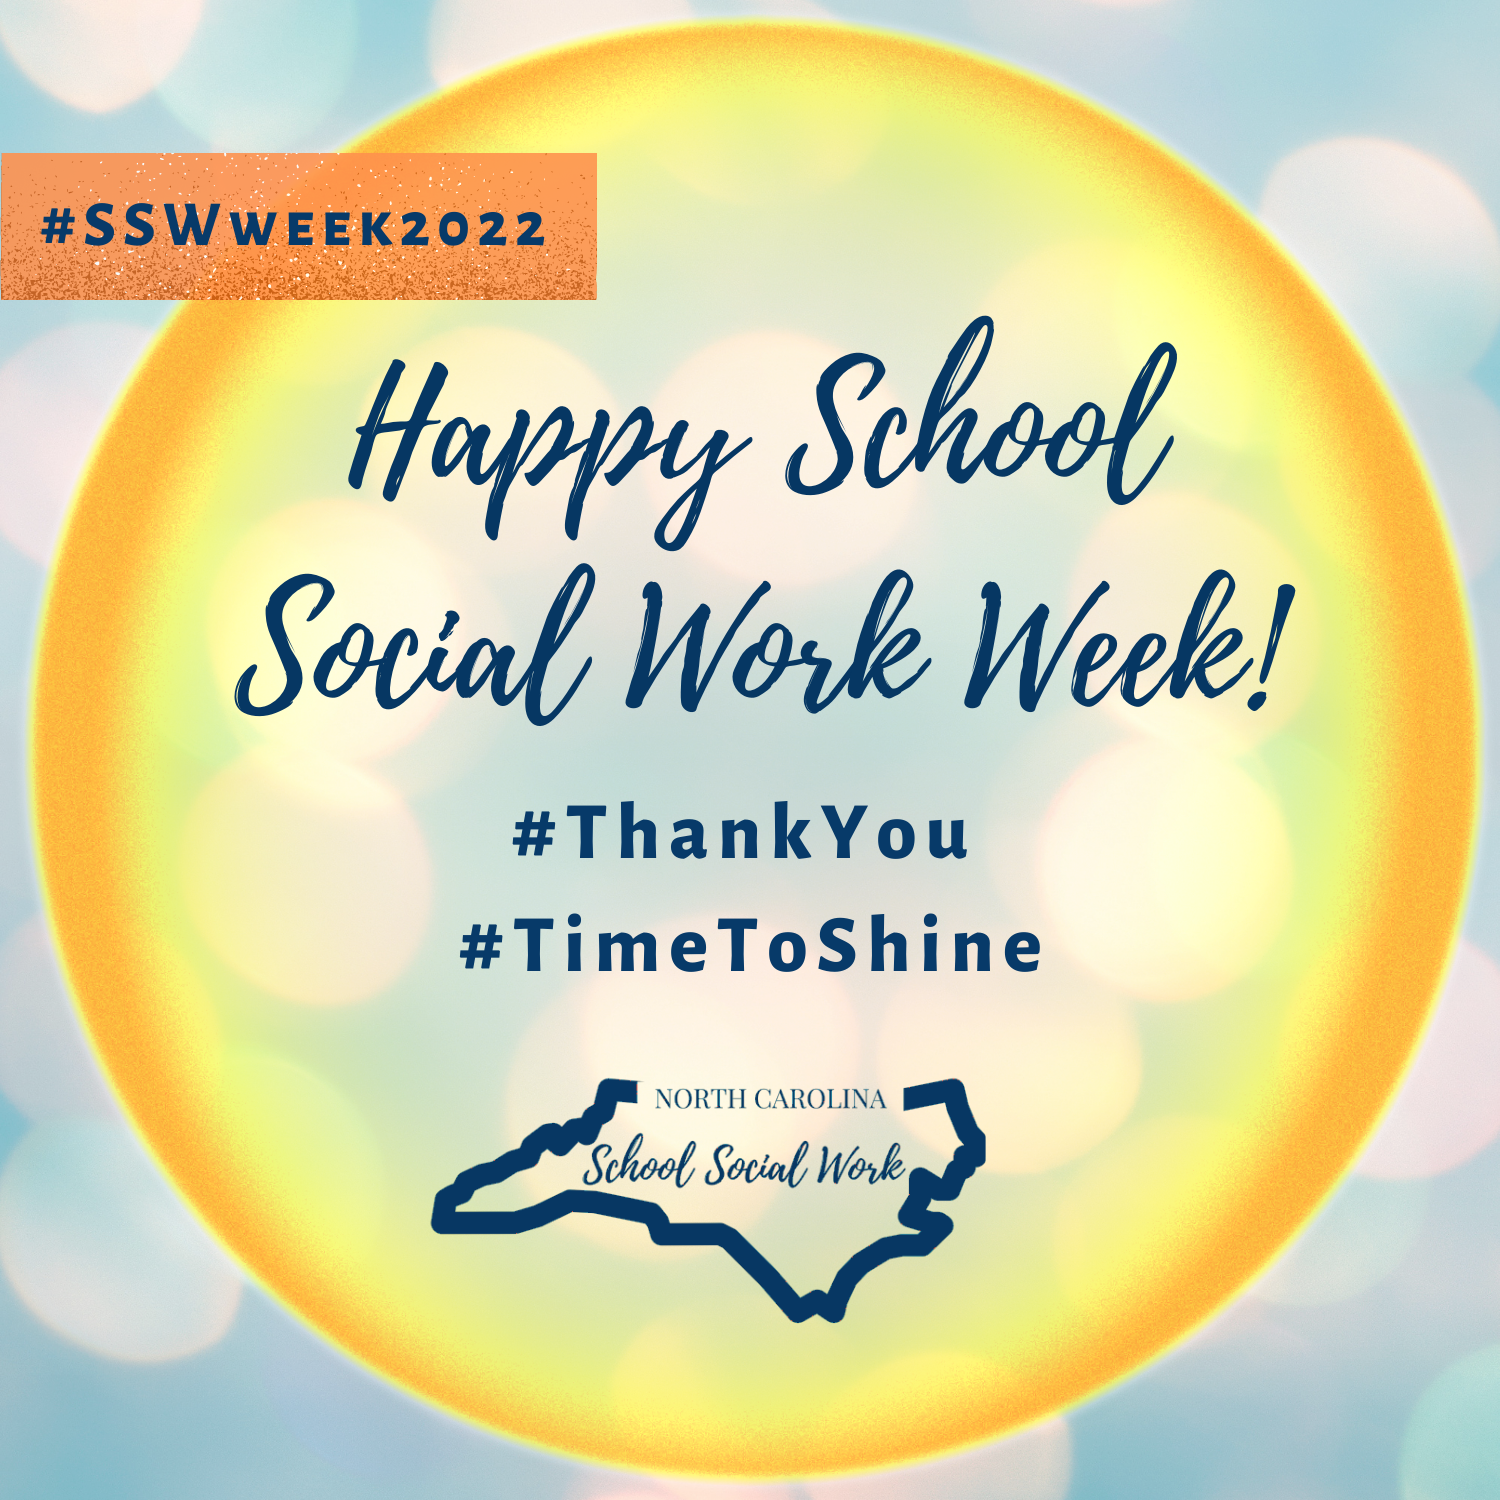 School Social Work Week